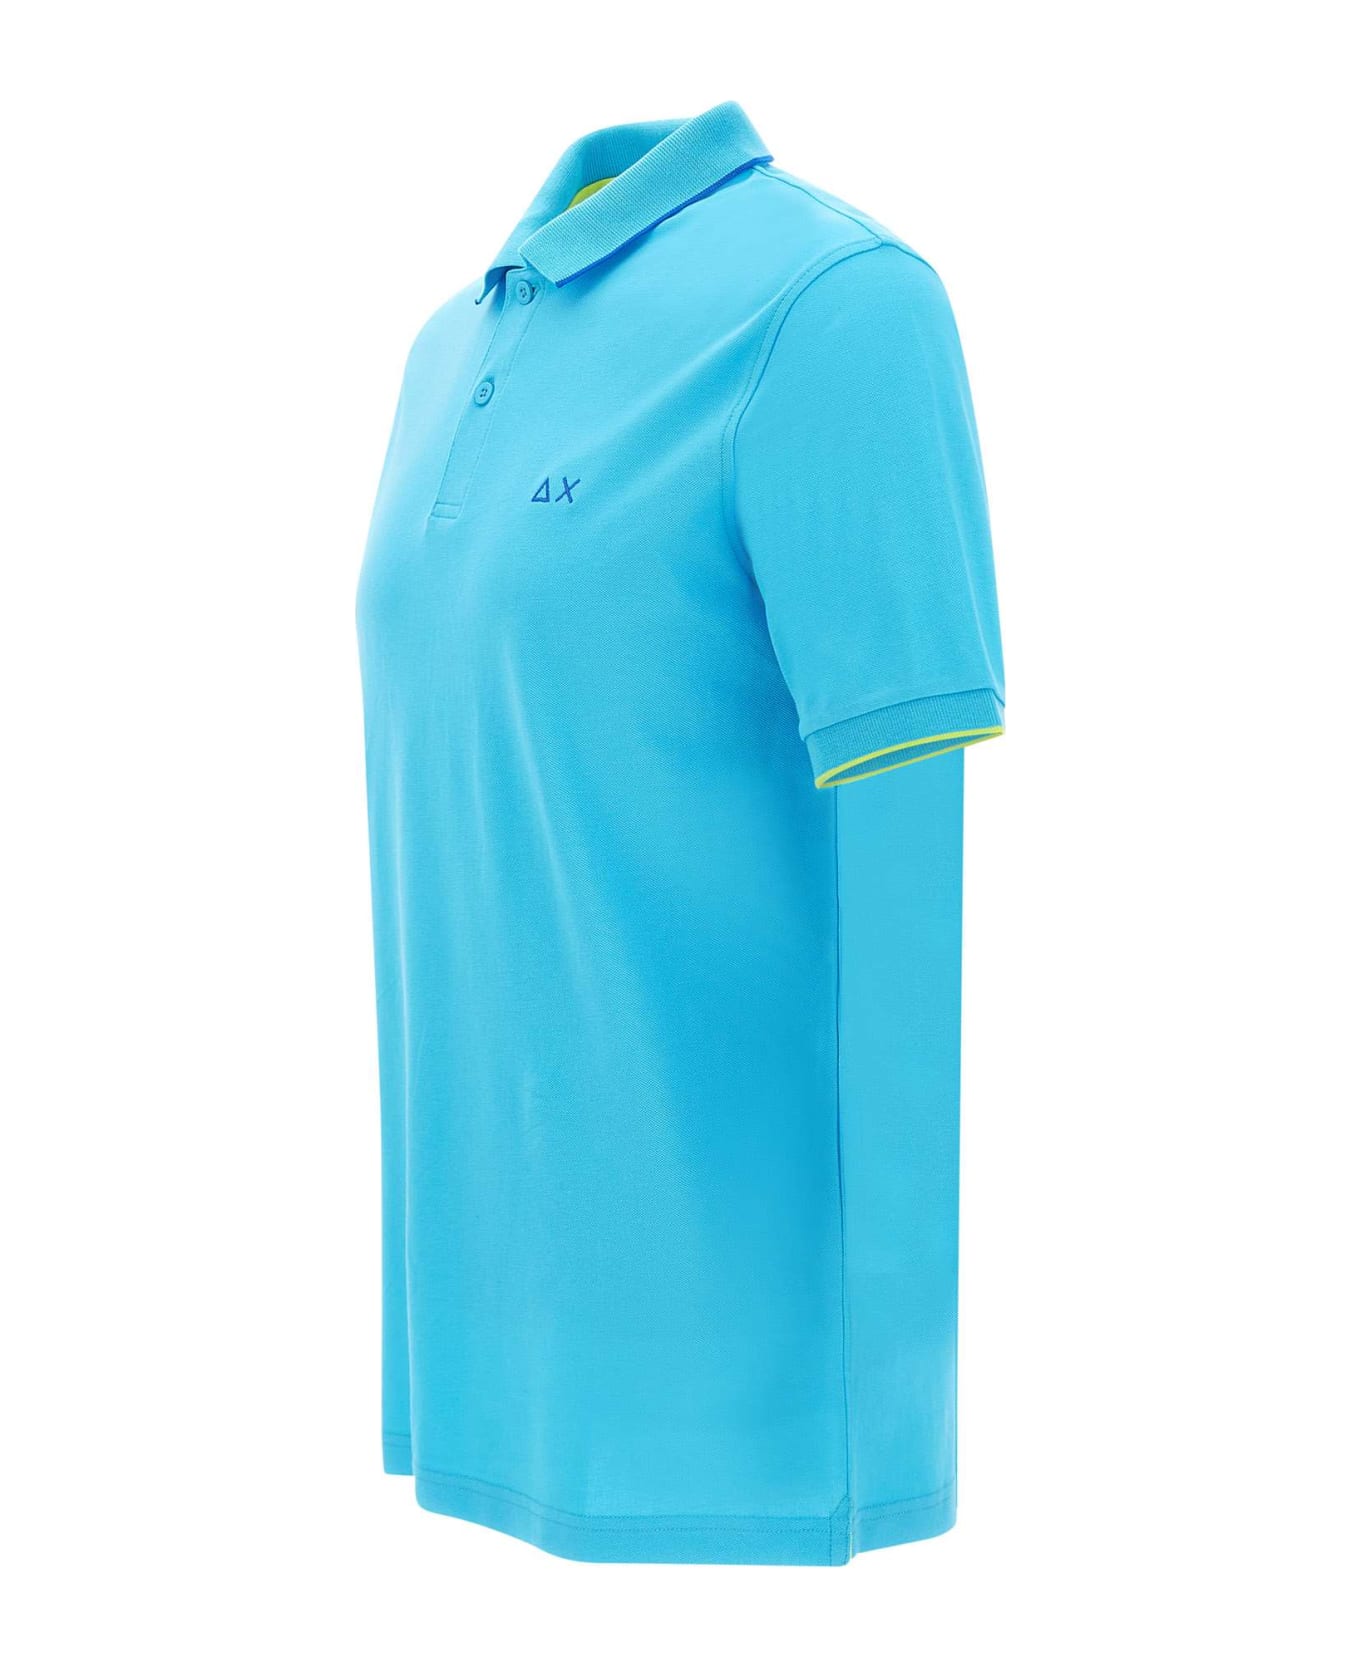 Sun 68 'small Stripe' Polo Shirt Cotton Polo Shirt - TURCHESE